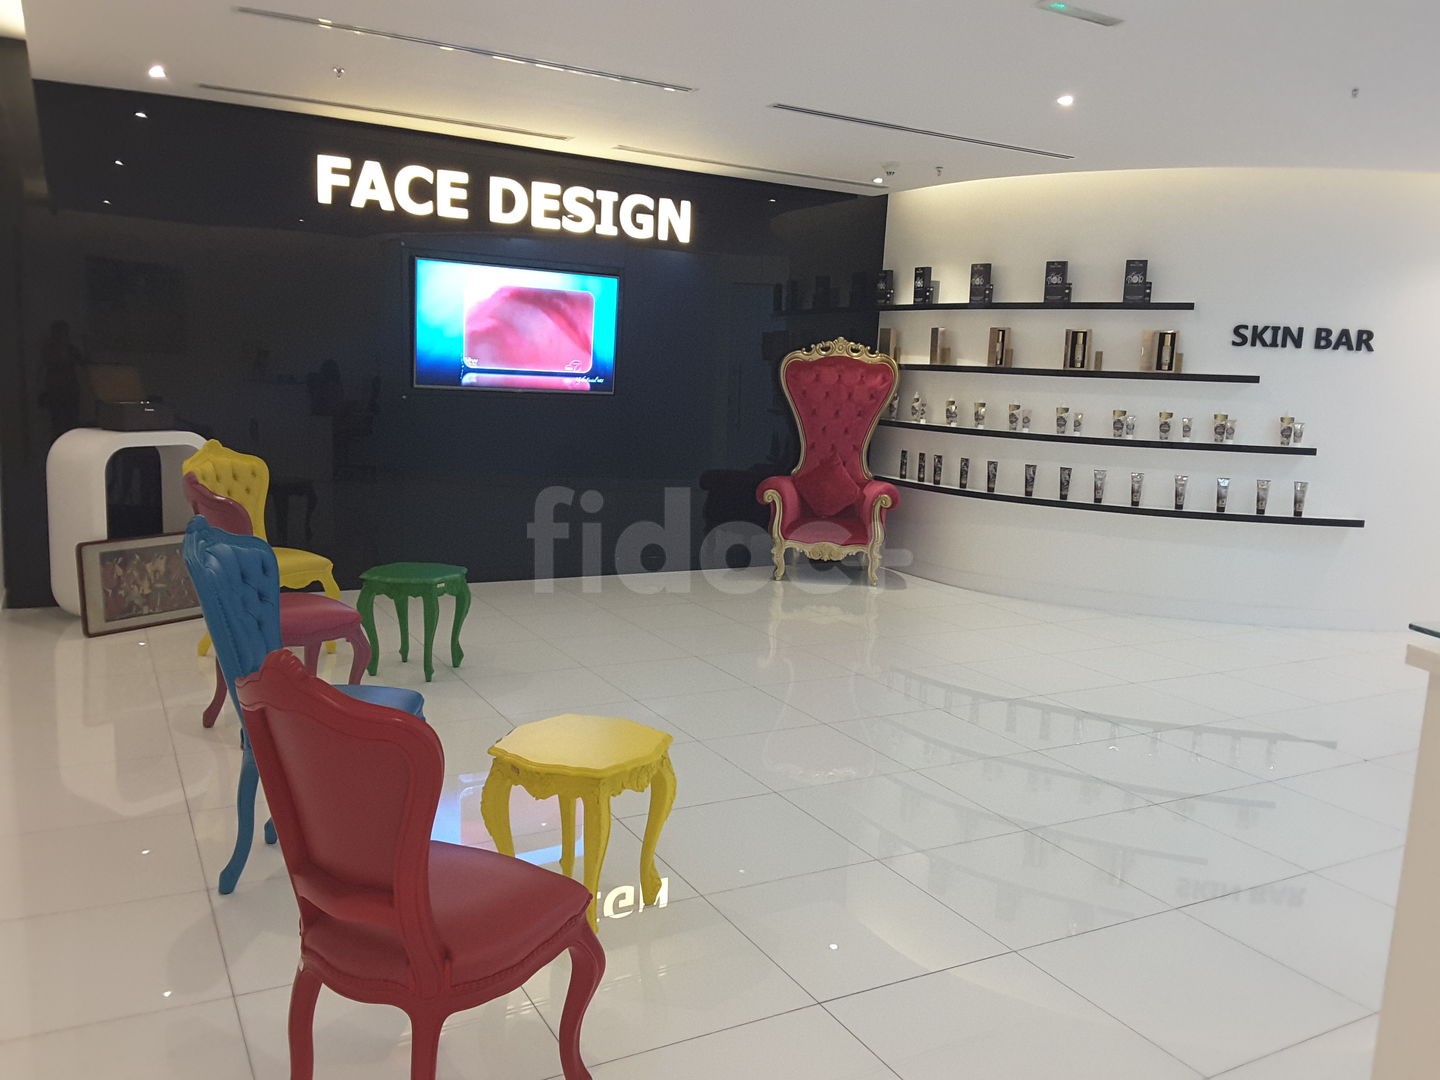 Face Design Medical Center, Dubai